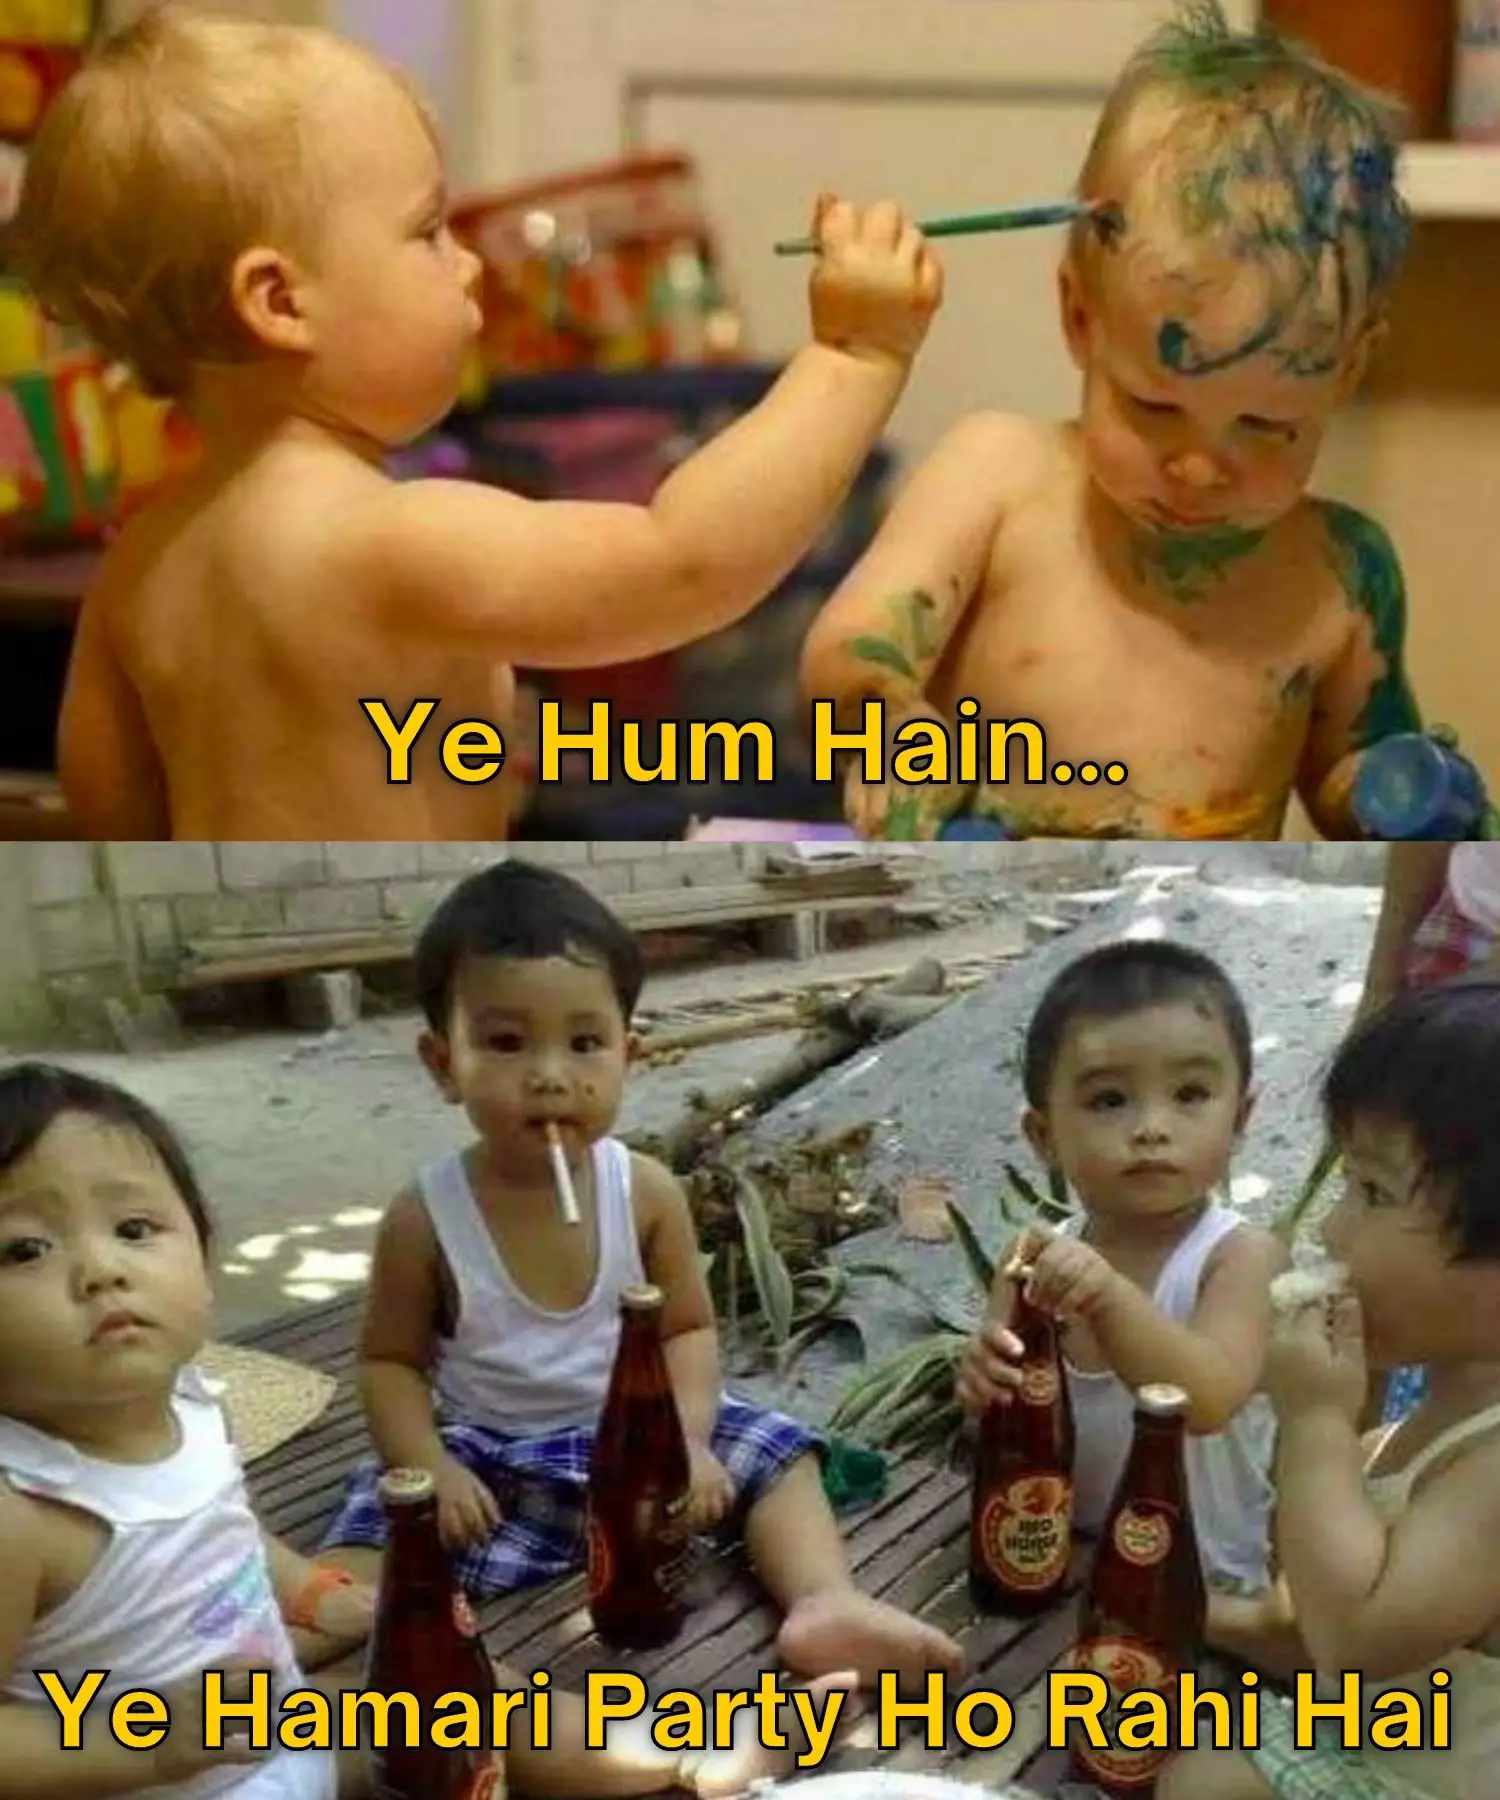 Ye Hum Hai Meme on Babies